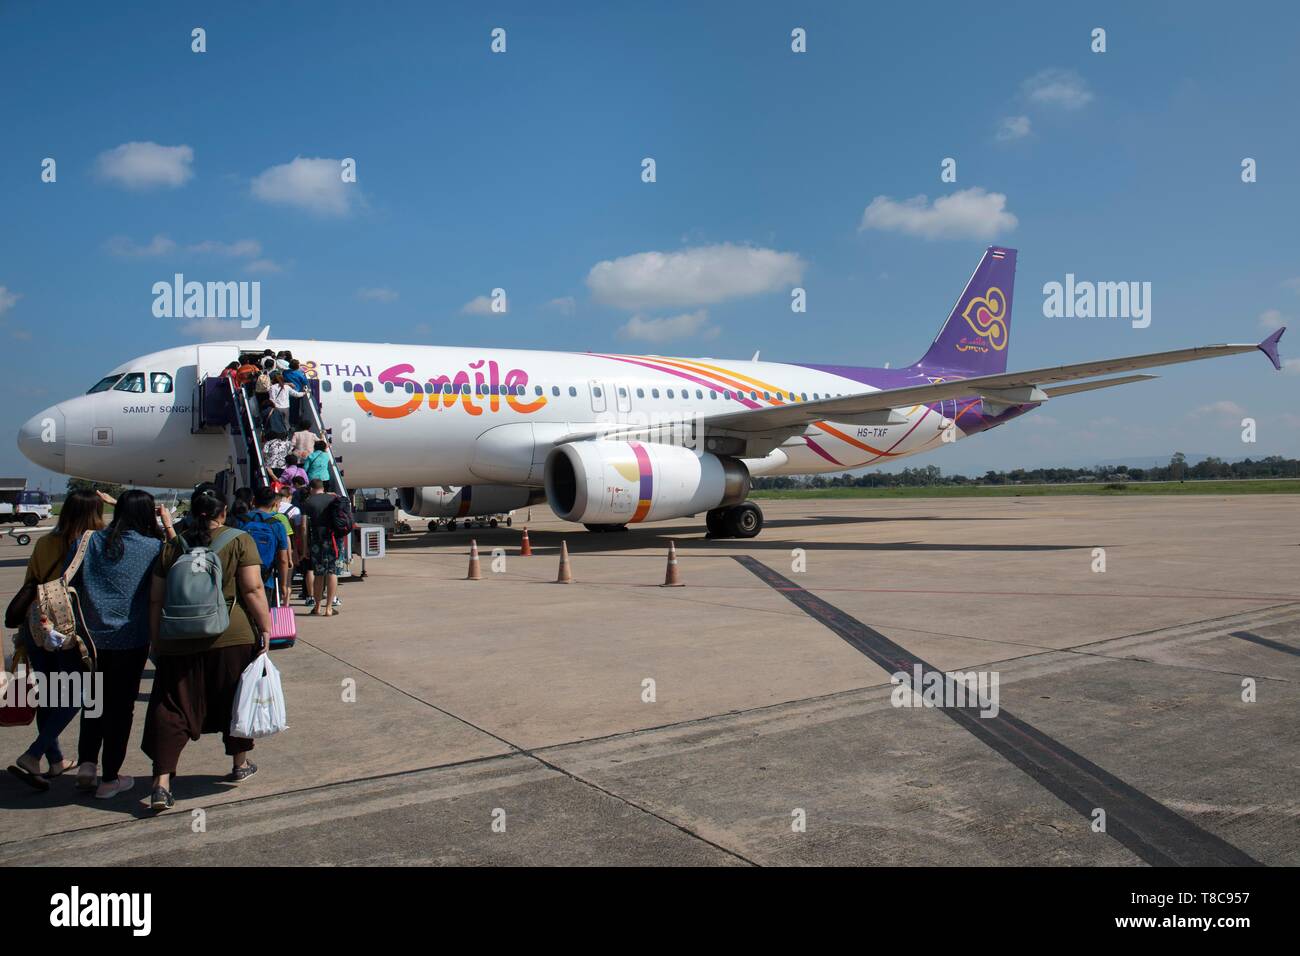 Sourire thaï, compagnie aérienne d'avions de transport de passagers à l'Aéroport International de Chiang Rai, Thaïlande Banque D'Images